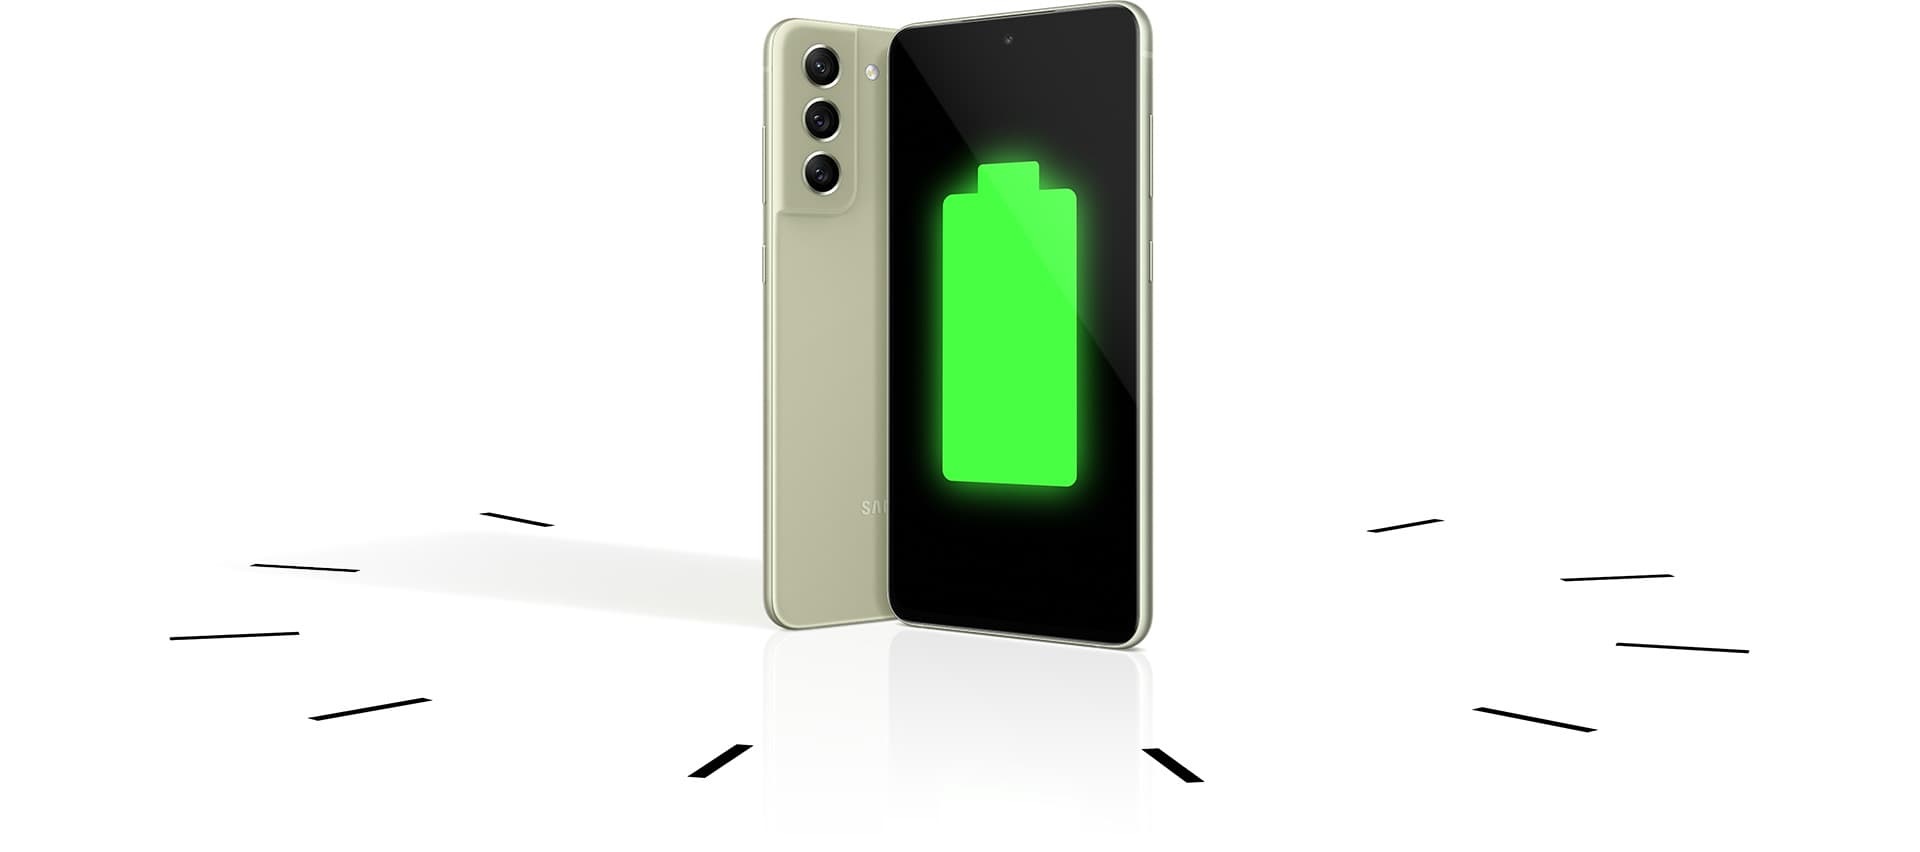 Zwei Galaxy S21 FE 5G Smartphones stehen aufrecht, eines von hinten und eines von vorne gesehen, mit einem vollen Akkusymbol auf dem Display. Die Smartphones stehen in einer Uhr, um die lange Akkulaufzeit zu verdeutlichen.